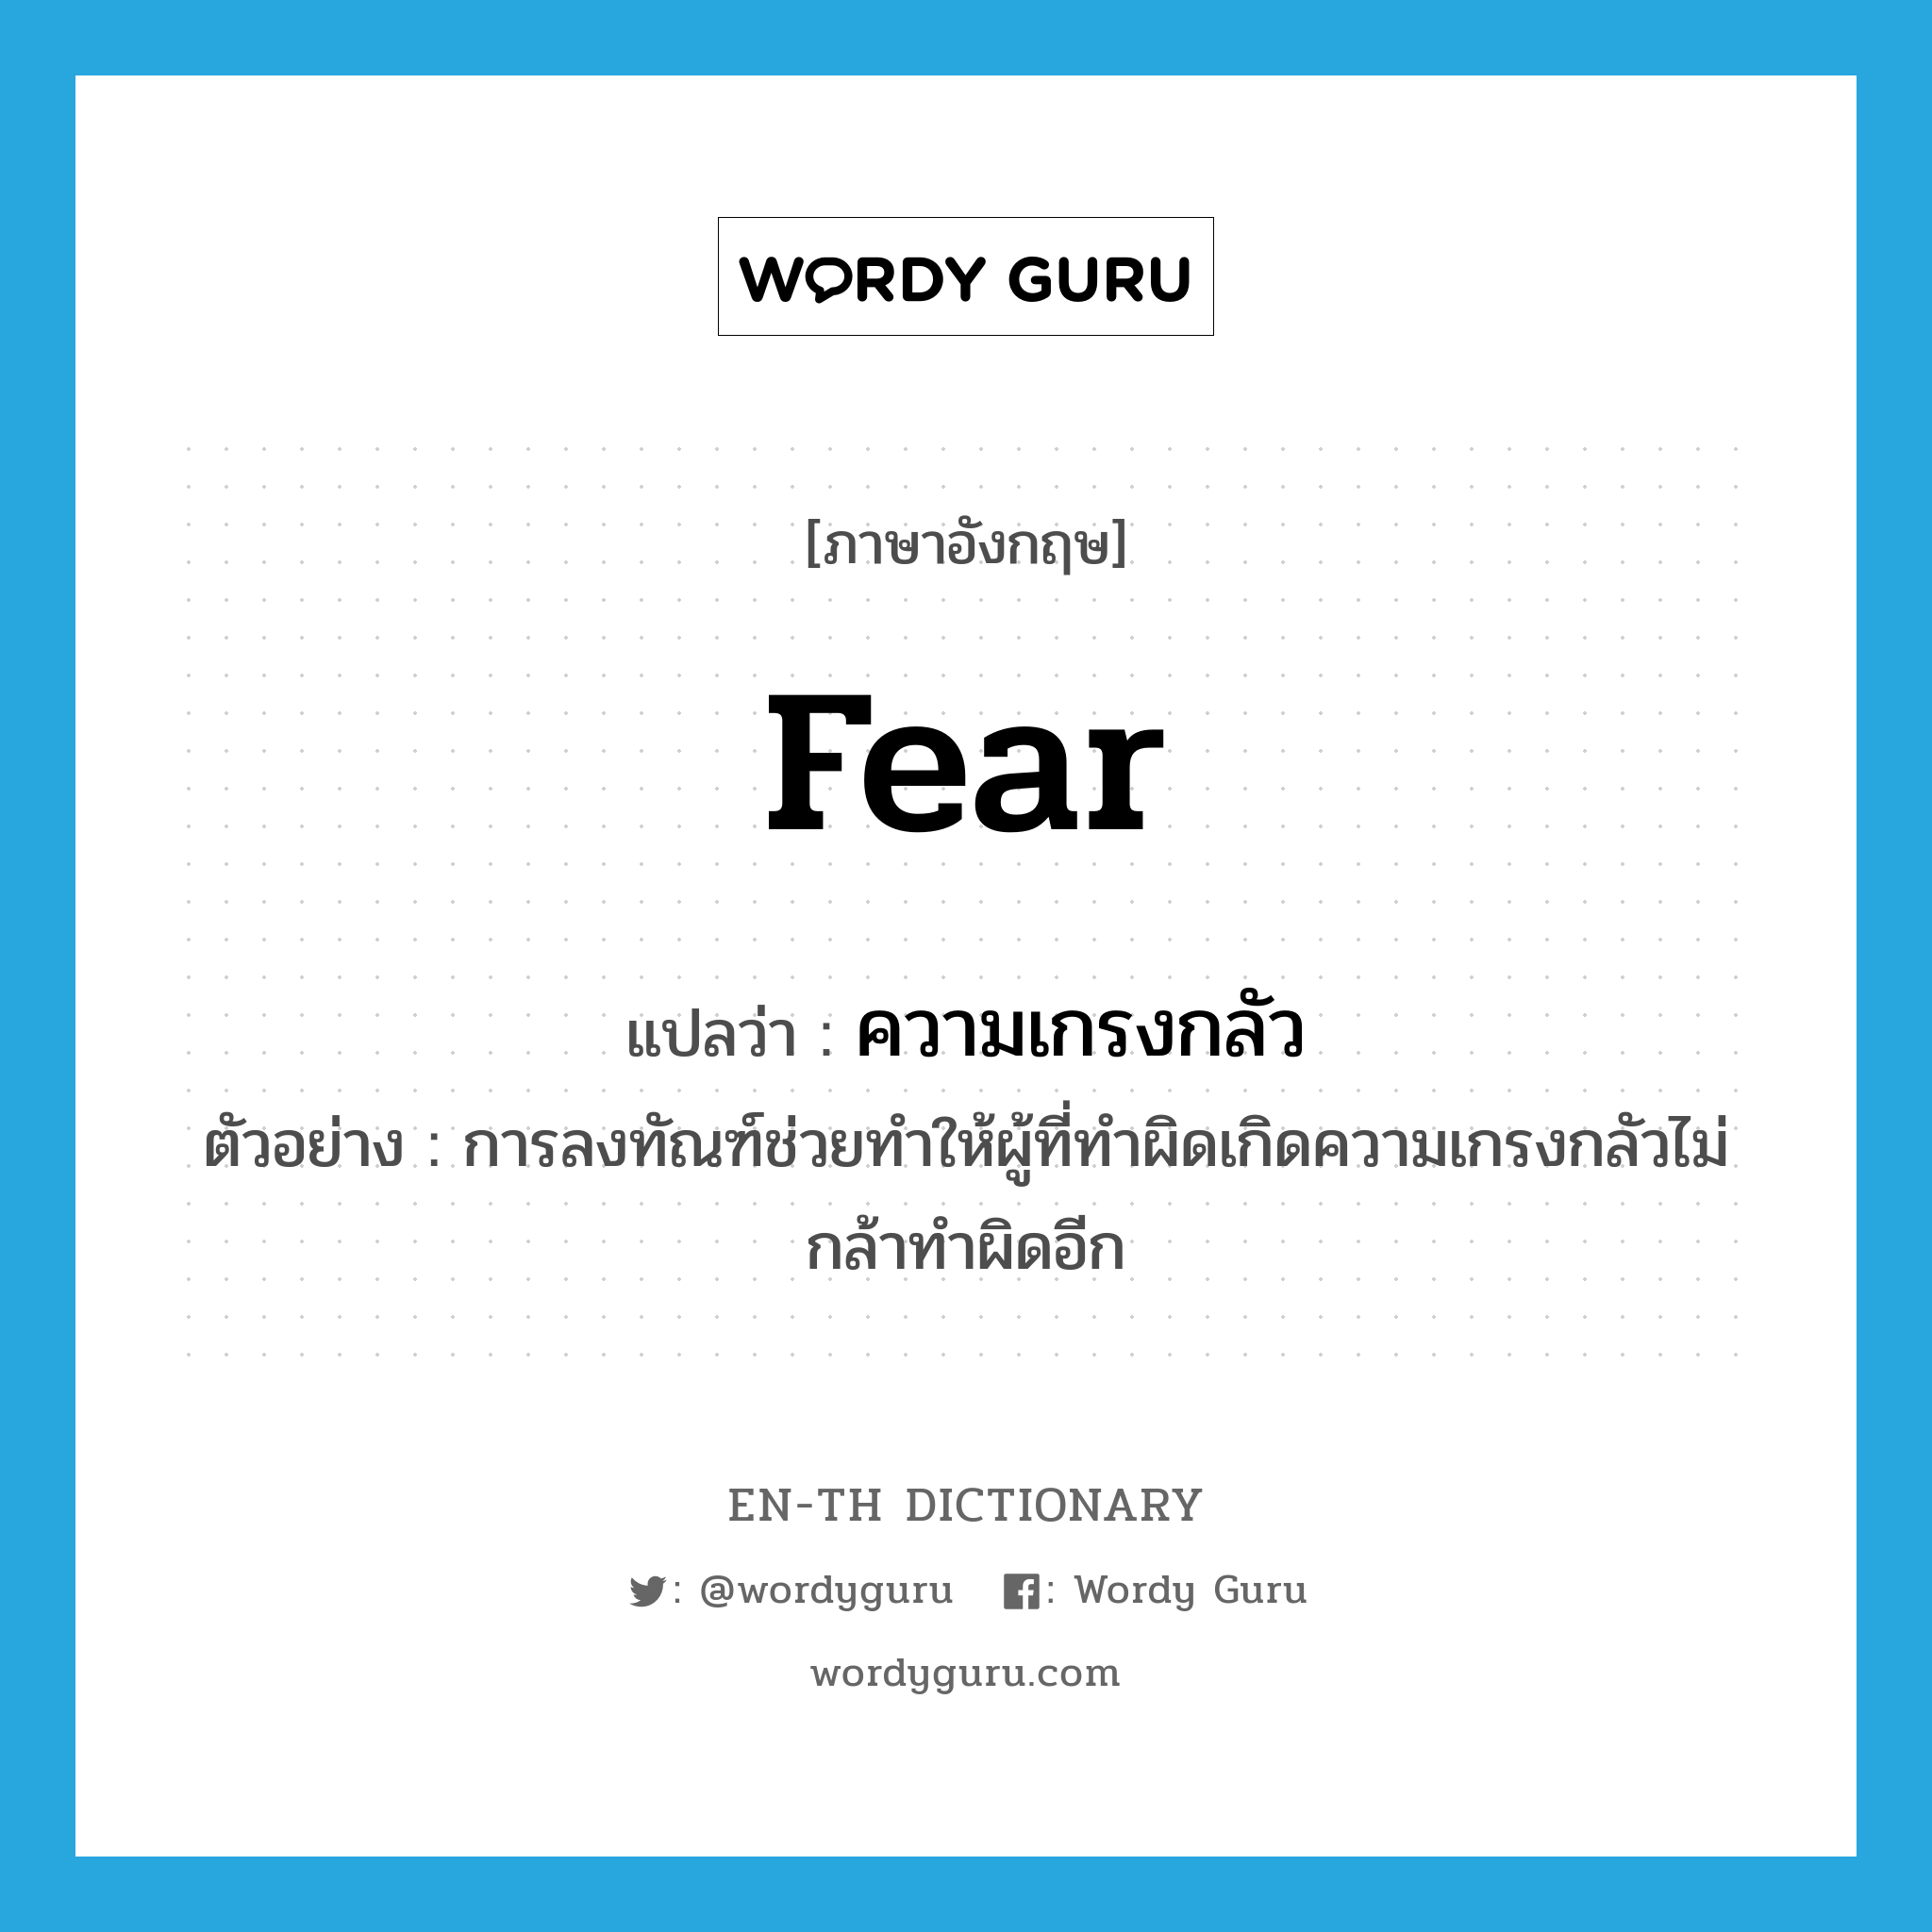 ความเกรงกลัว ภาษาอังกฤษ?, คำศัพท์ภาษาอังกฤษ ความเกรงกลัว แปลว่า fear ประเภท N ตัวอย่าง การลงทัณฑ์ช่วยทำให้ผู้ที่ทำผิดเกิดความเกรงกลัวไม่กล้าทำผิดอีก หมวด N